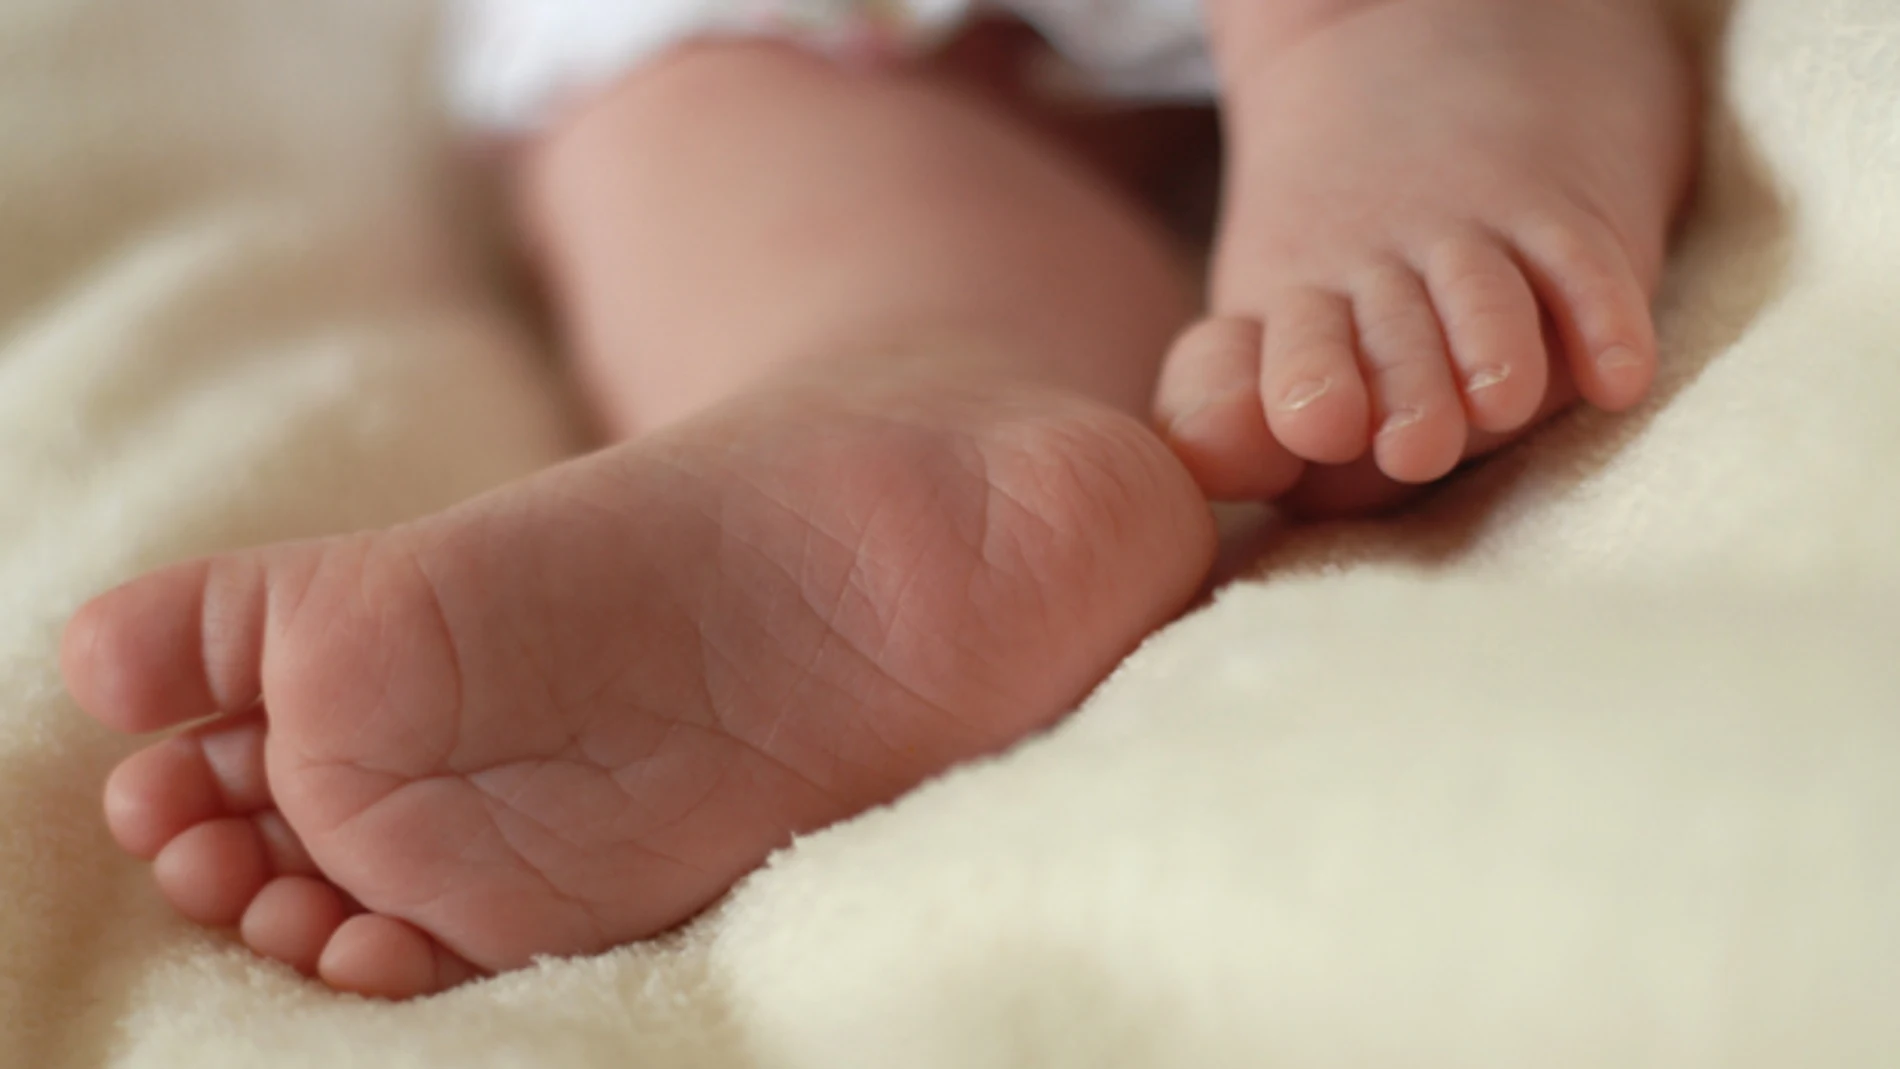 Imagen de los pies de un bebé